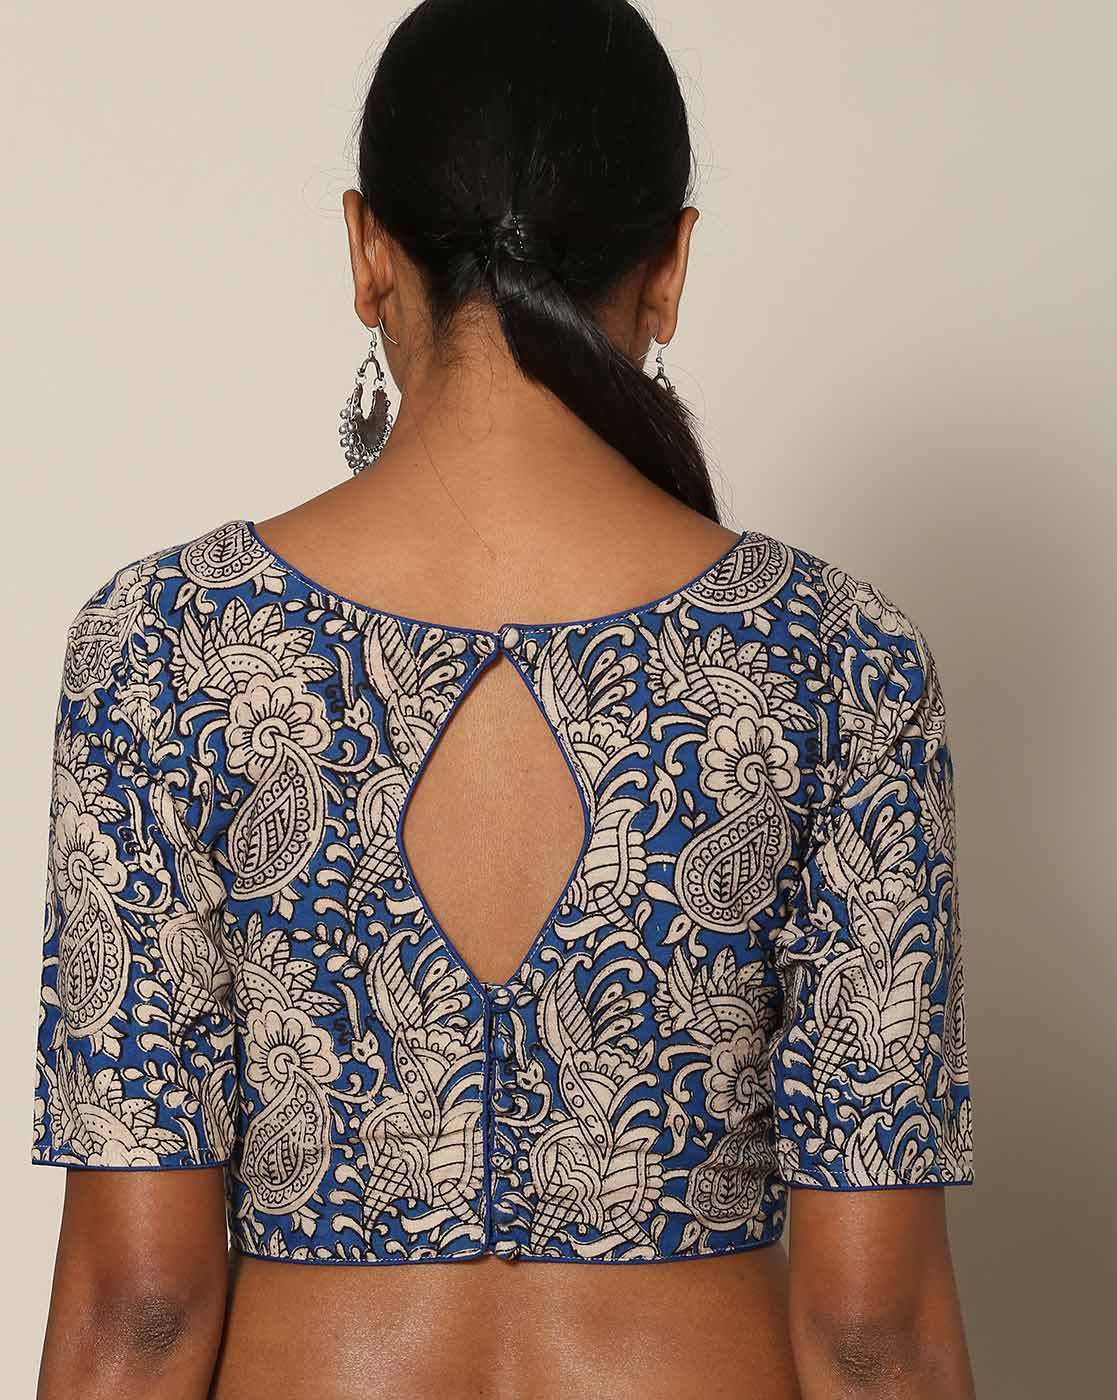 Cotton saree blouse back neck designs 2018 – 80 Best Blouse ...